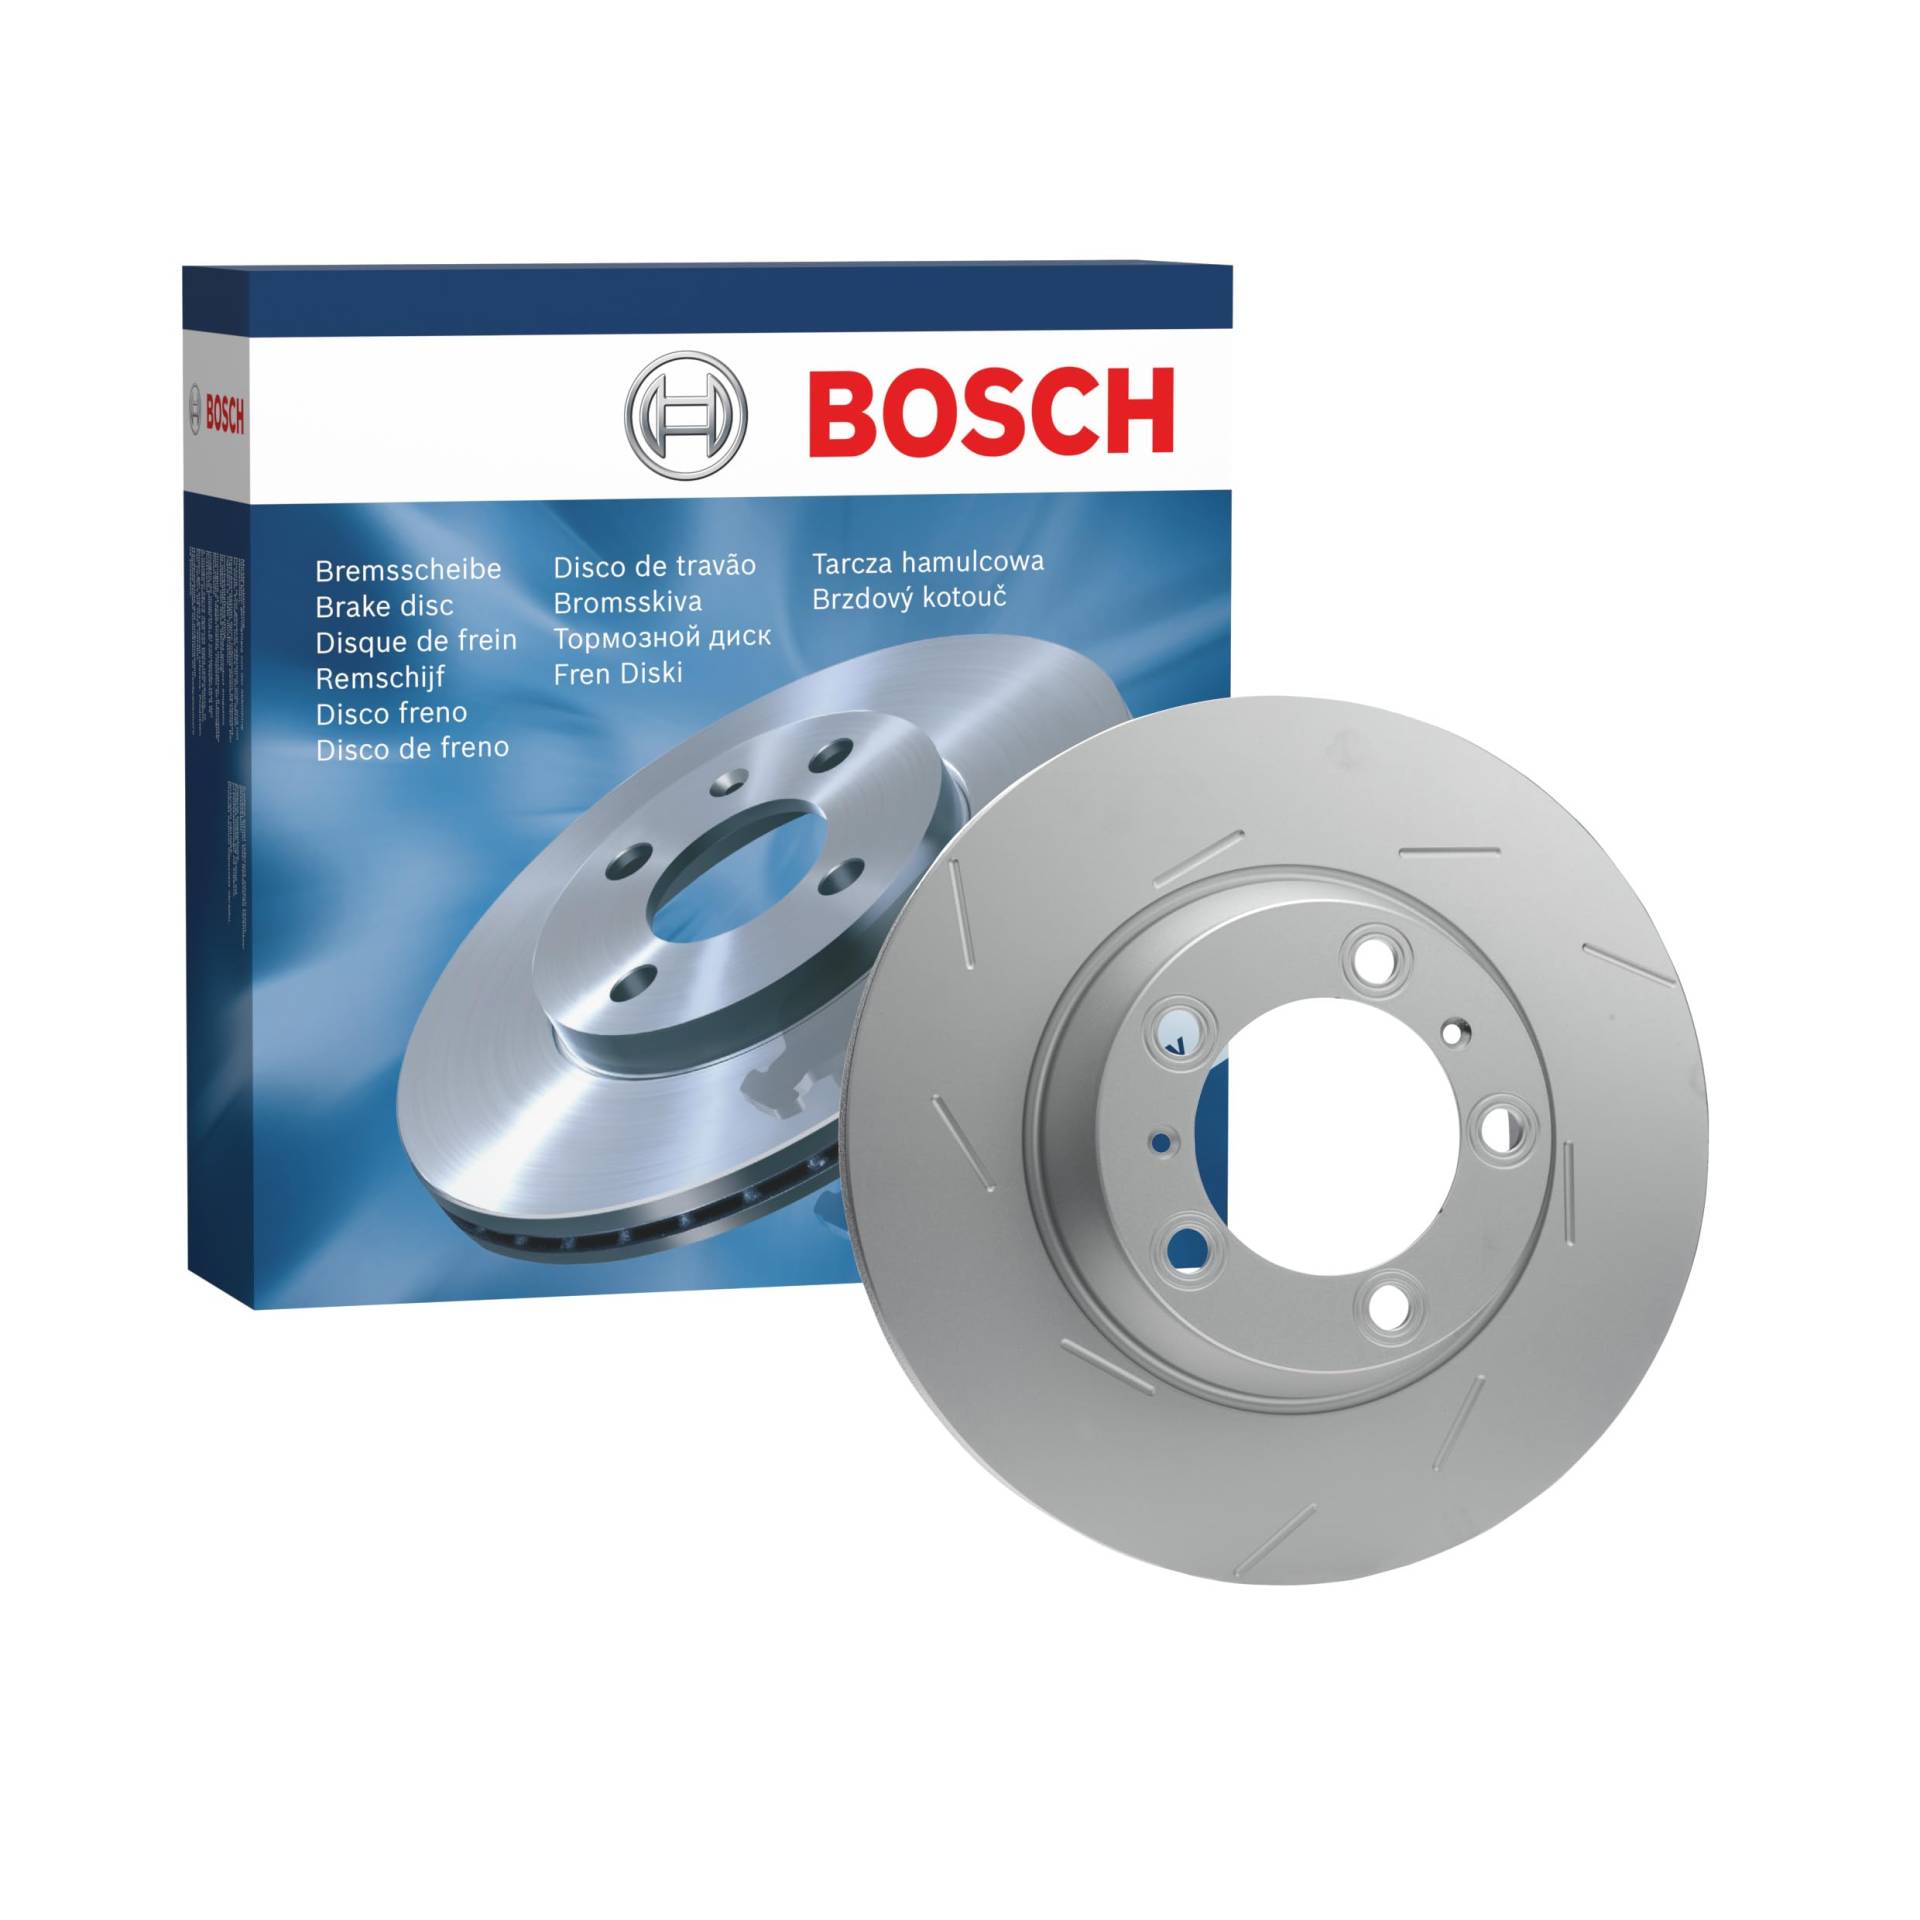 Bosch BD1564 Bremsscheiben - Hinterachse - ECE-R90 Zertifizierung - eine Bremsscheibe von Bosch Automotive